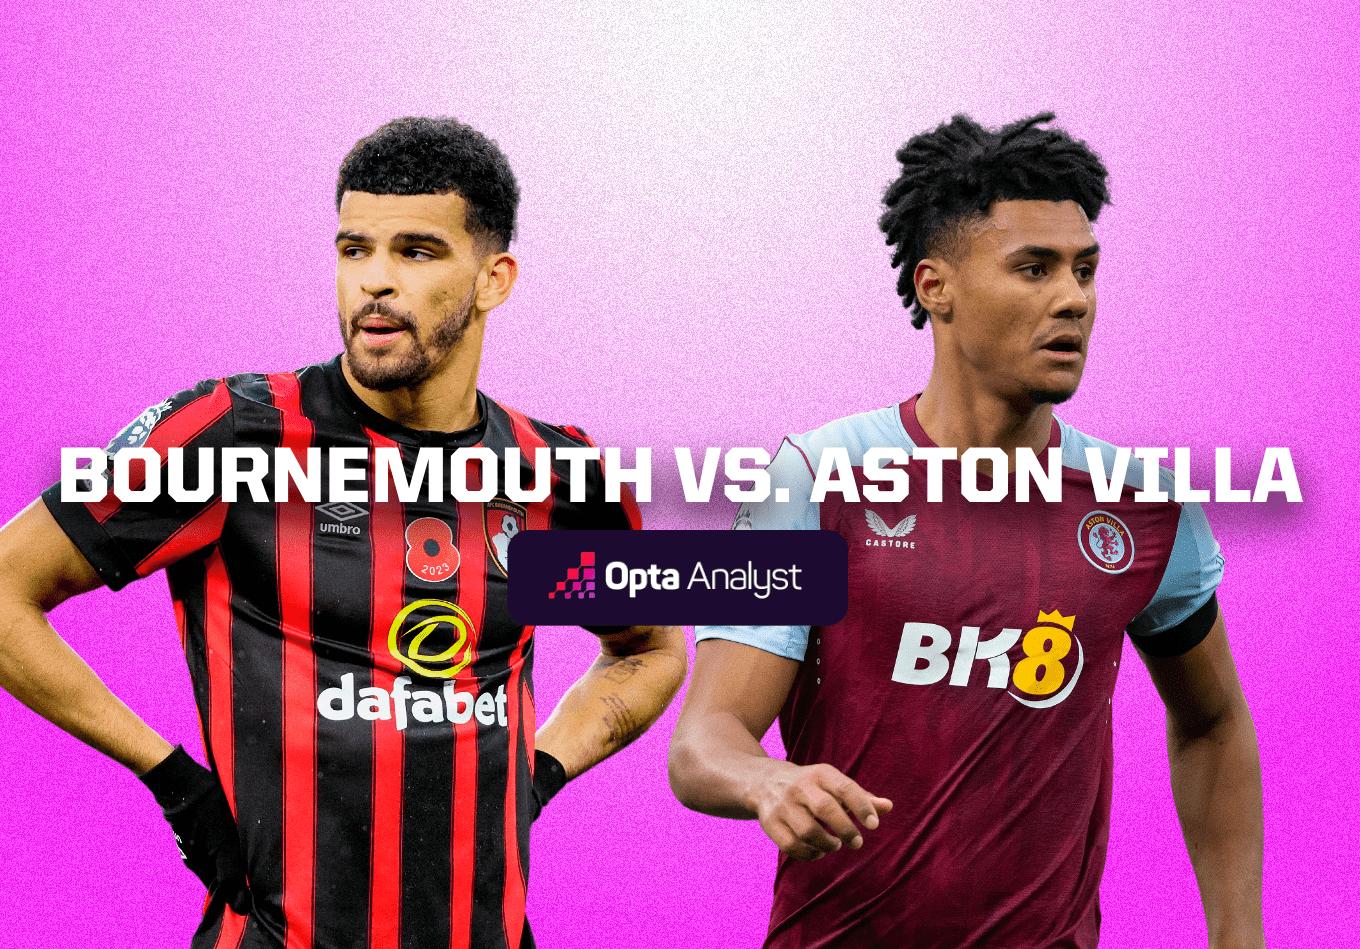 Bournemouth vs Aston Villa: Prediction and Preview